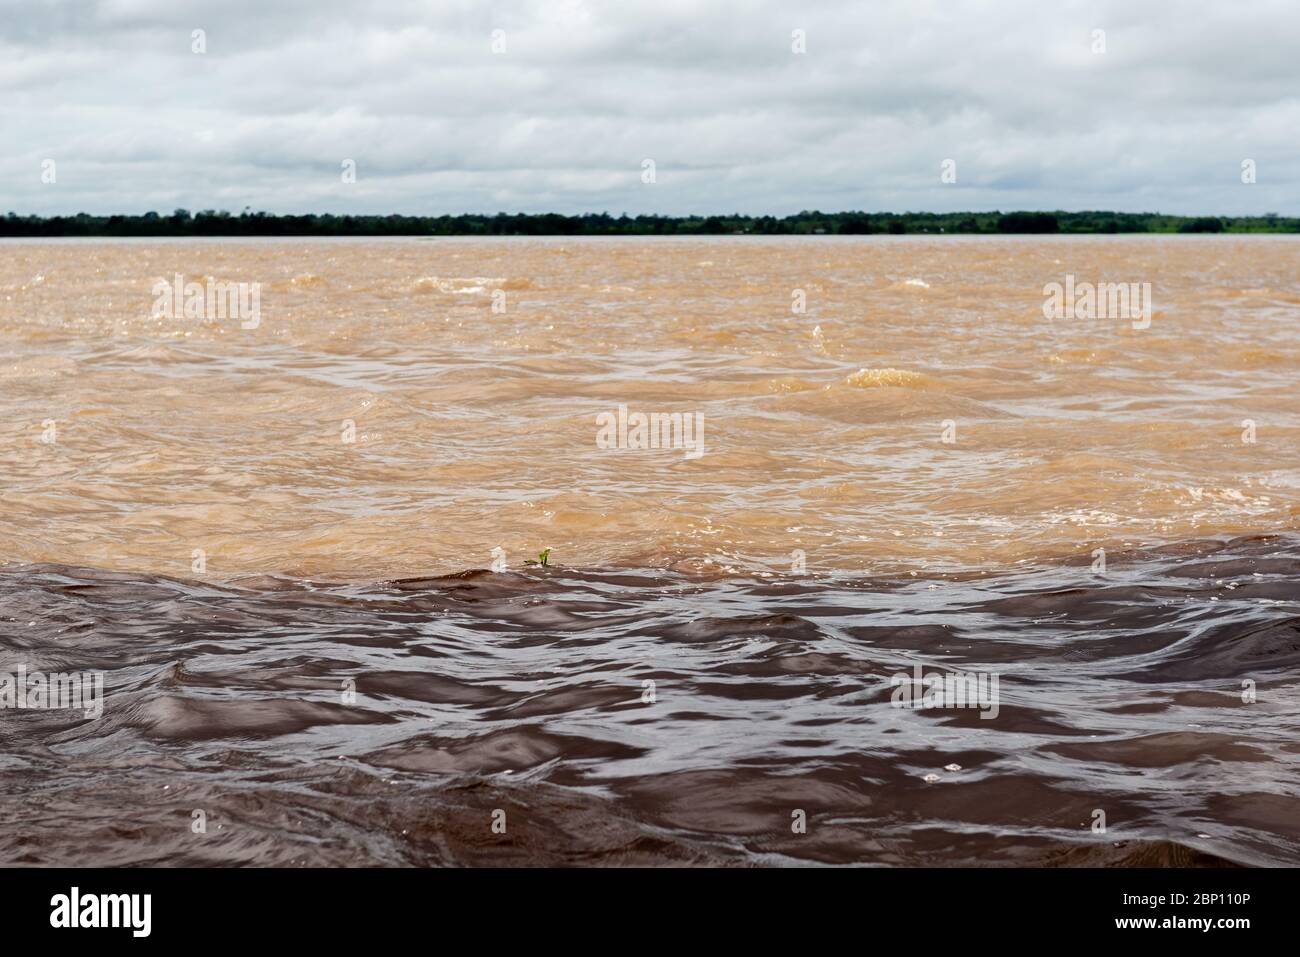 Encontro das águas, the meeting of the waters, Amzon River, Manaus, Amazon State, Brazil, Latin America Stock Photo